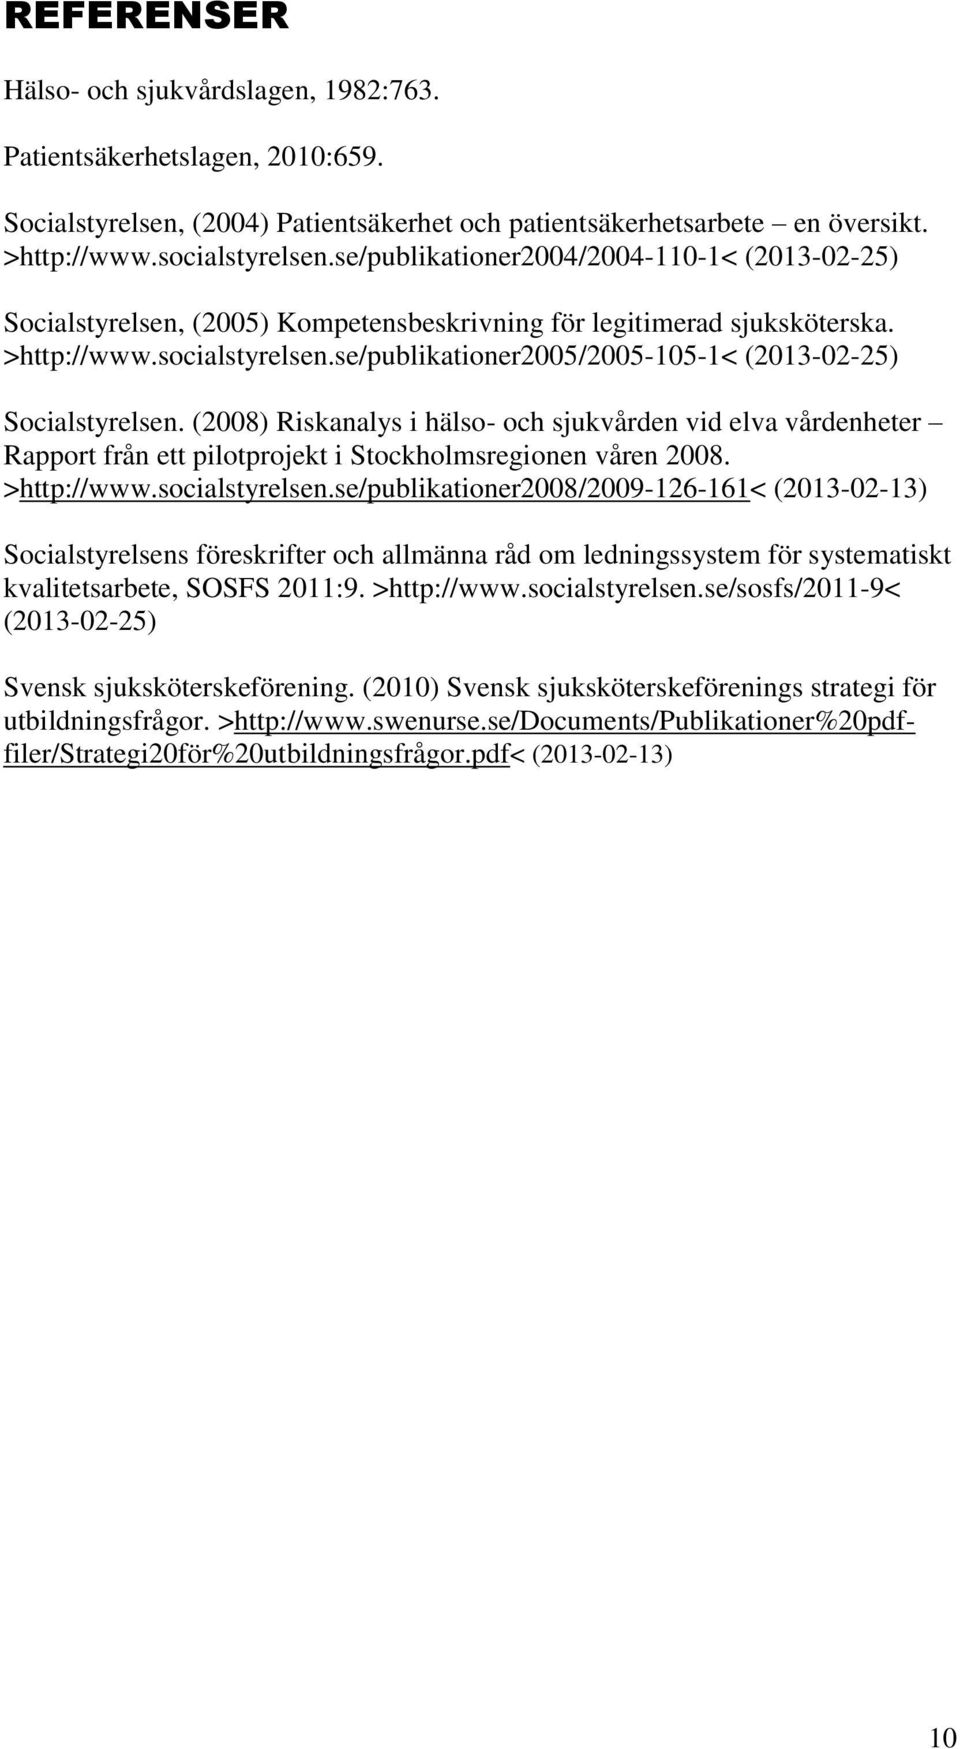 se/publikationer2005/2005-105-1< (2013-02-25) Socialstyrelsen. (2008) Riskanalys i hälso- och sjukvården vid elva vårdenheter Rapport från ett pilotprojekt i Stockholmsregionen våren 2008.